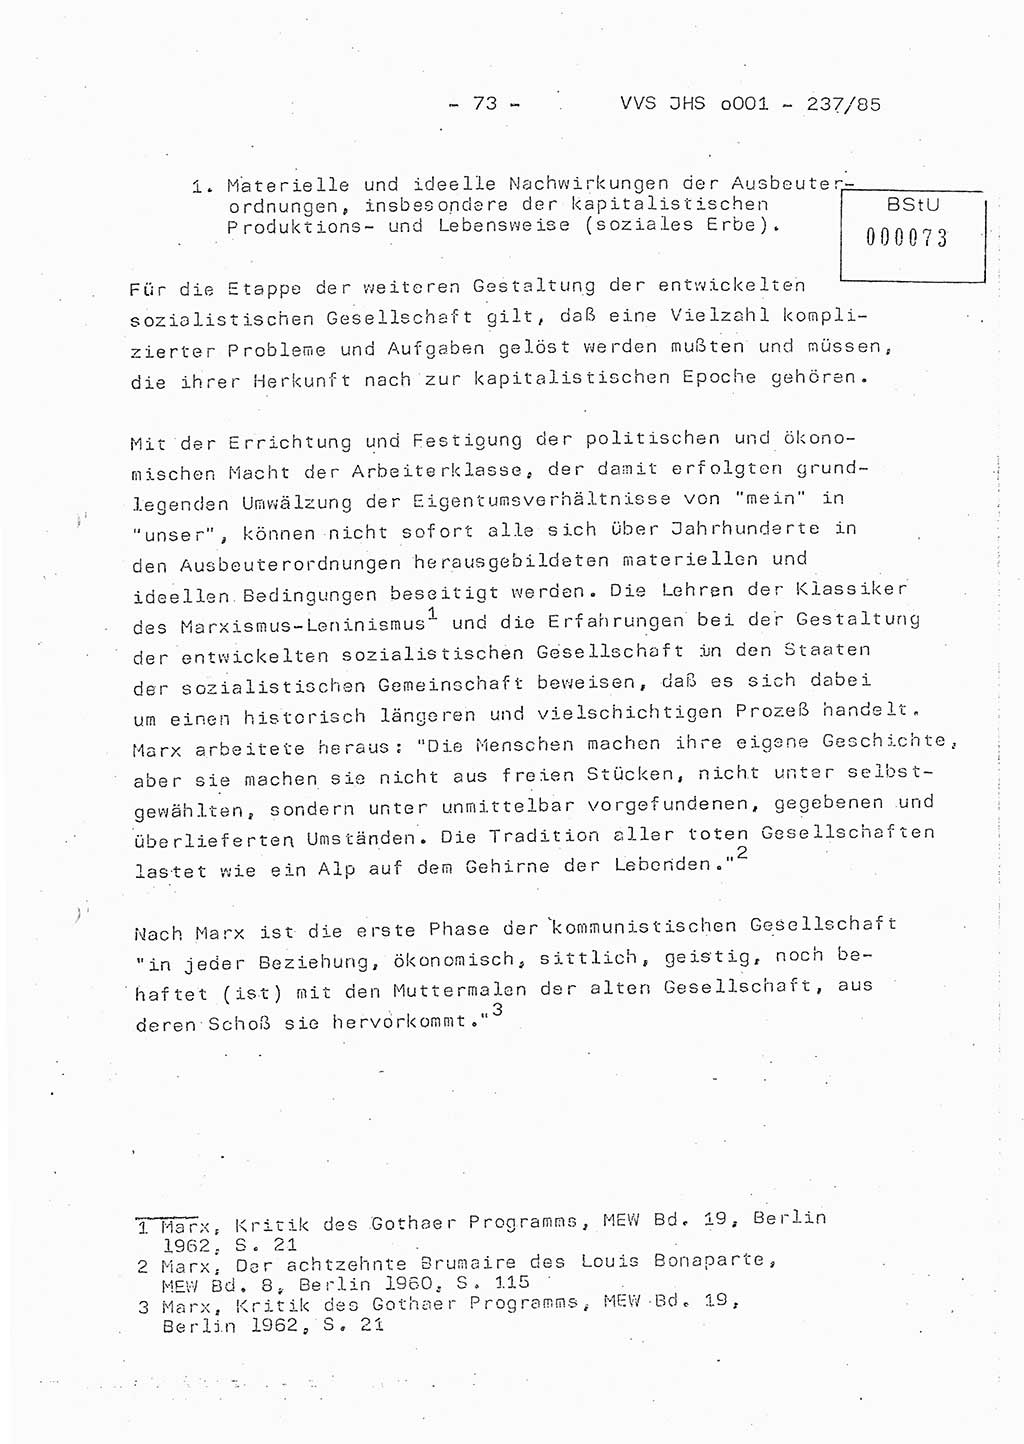 Dissertation Oberstleutnant Peter Jakulski (JHS), Oberstleutnat Christian Rudolph (HA Ⅸ), Major Horst Böttger (ZMD), Major Wolfgang Grüneberg (JHS), Major Albert Meutsch (JHS), Ministerium für Staatssicherheit (MfS) [Deutsche Demokratische Republik (DDR)], Juristische Hochschule (JHS), Vertrauliche Verschlußsache (VVS) o001-237/85, Potsdam 1985, Seite 73 (Diss. MfS DDR JHS VVS o001-237/85 1985, S. 73)